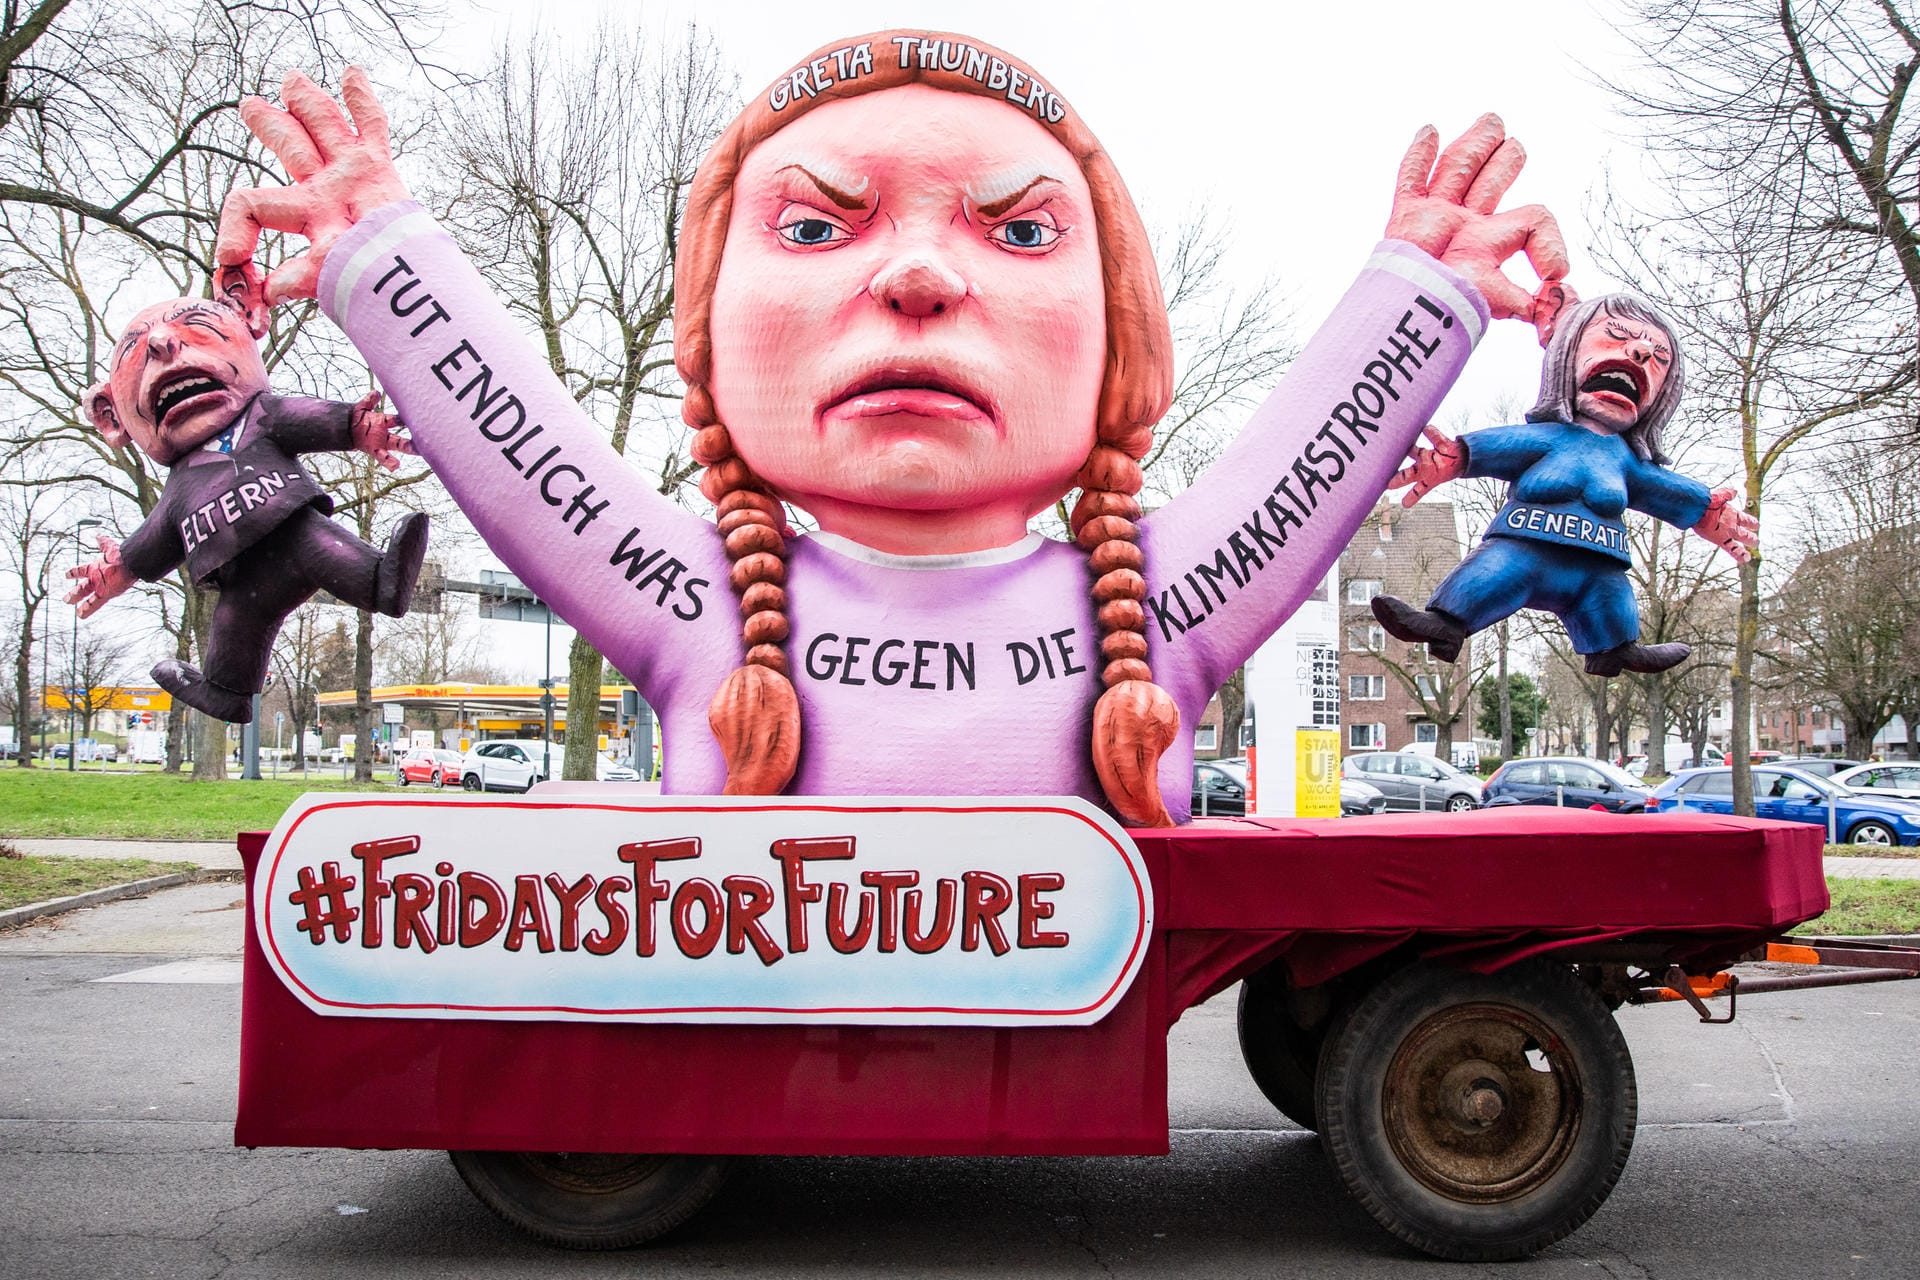 Die Klimaaktivistin: Erstaunlich gut trifft es in Düsseldorf die junge Klimaaktivistin Greta Thunberg – sie maßregelt selbst die Politik.